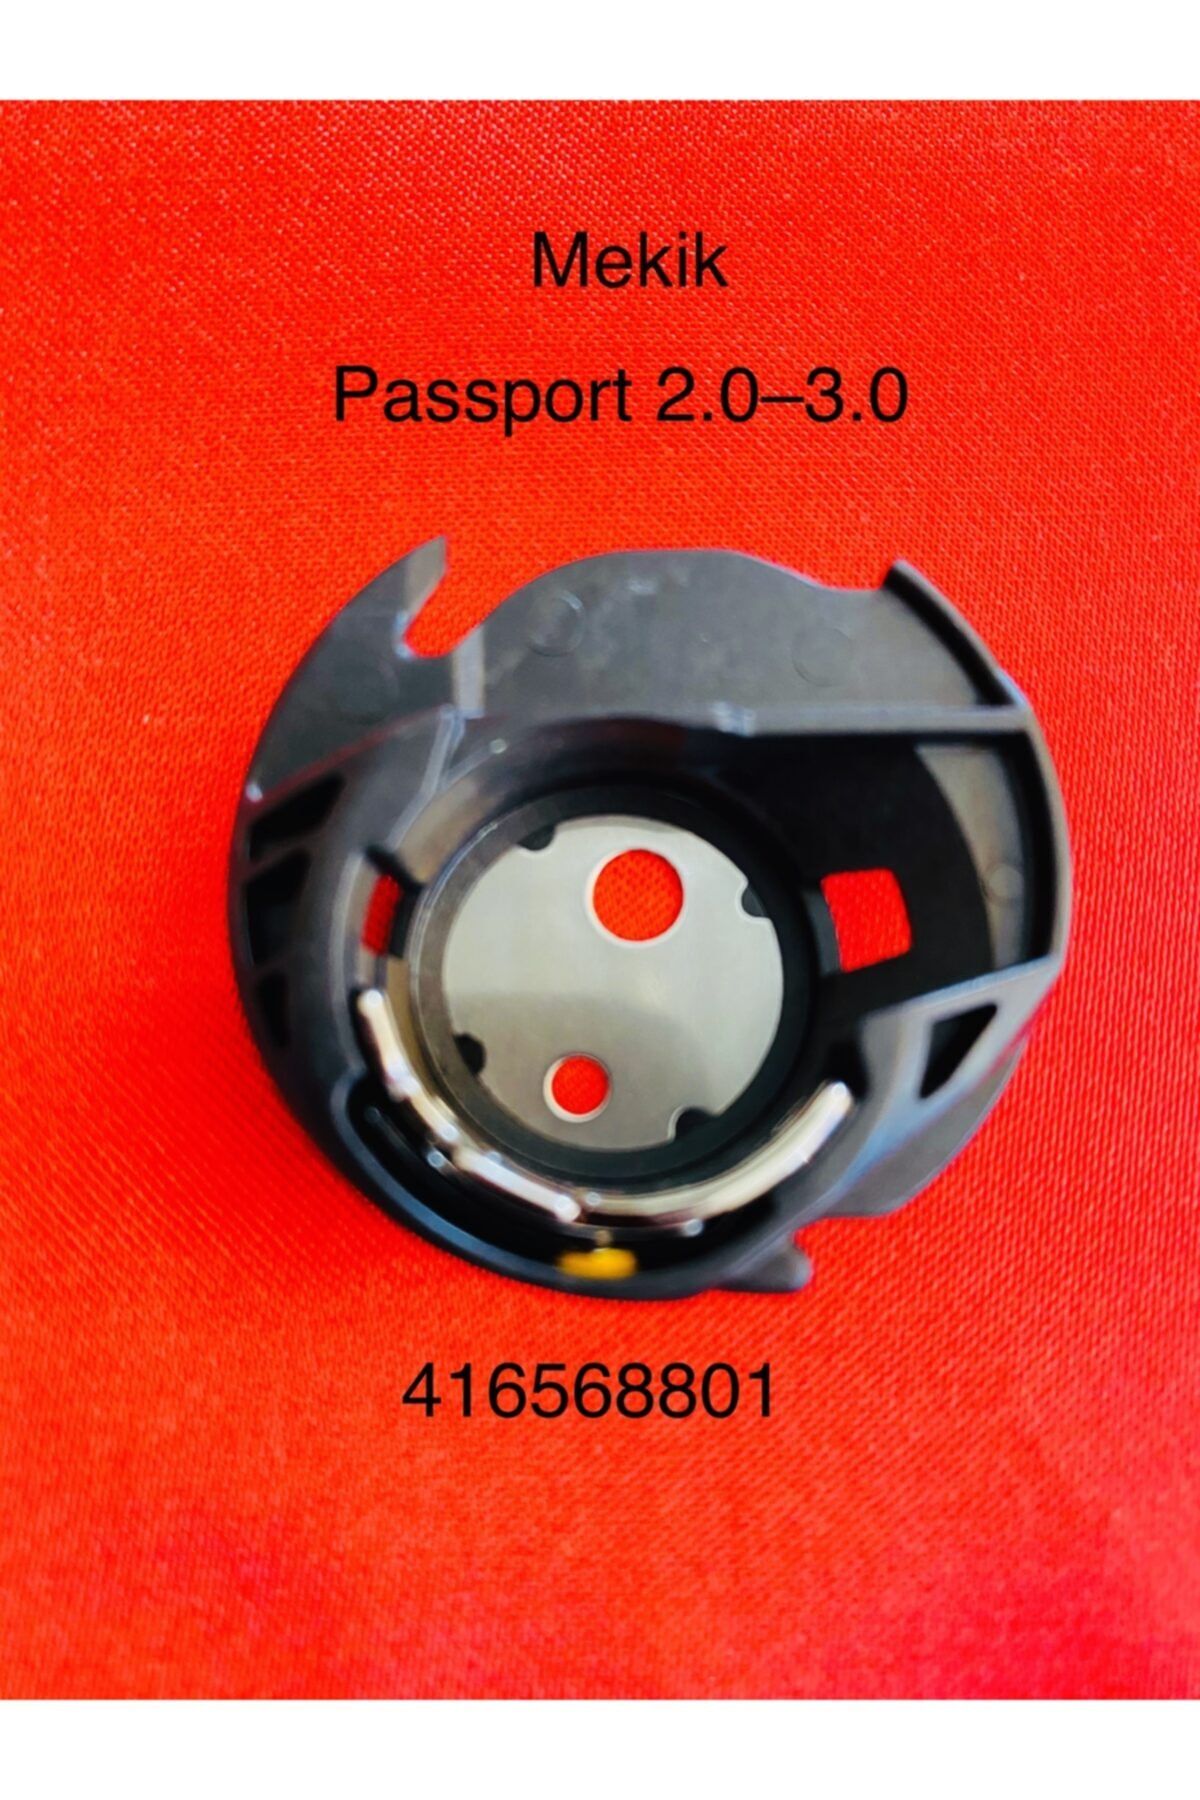 Pfaff Mekik 416568801 (Passport 2.0-3.0)